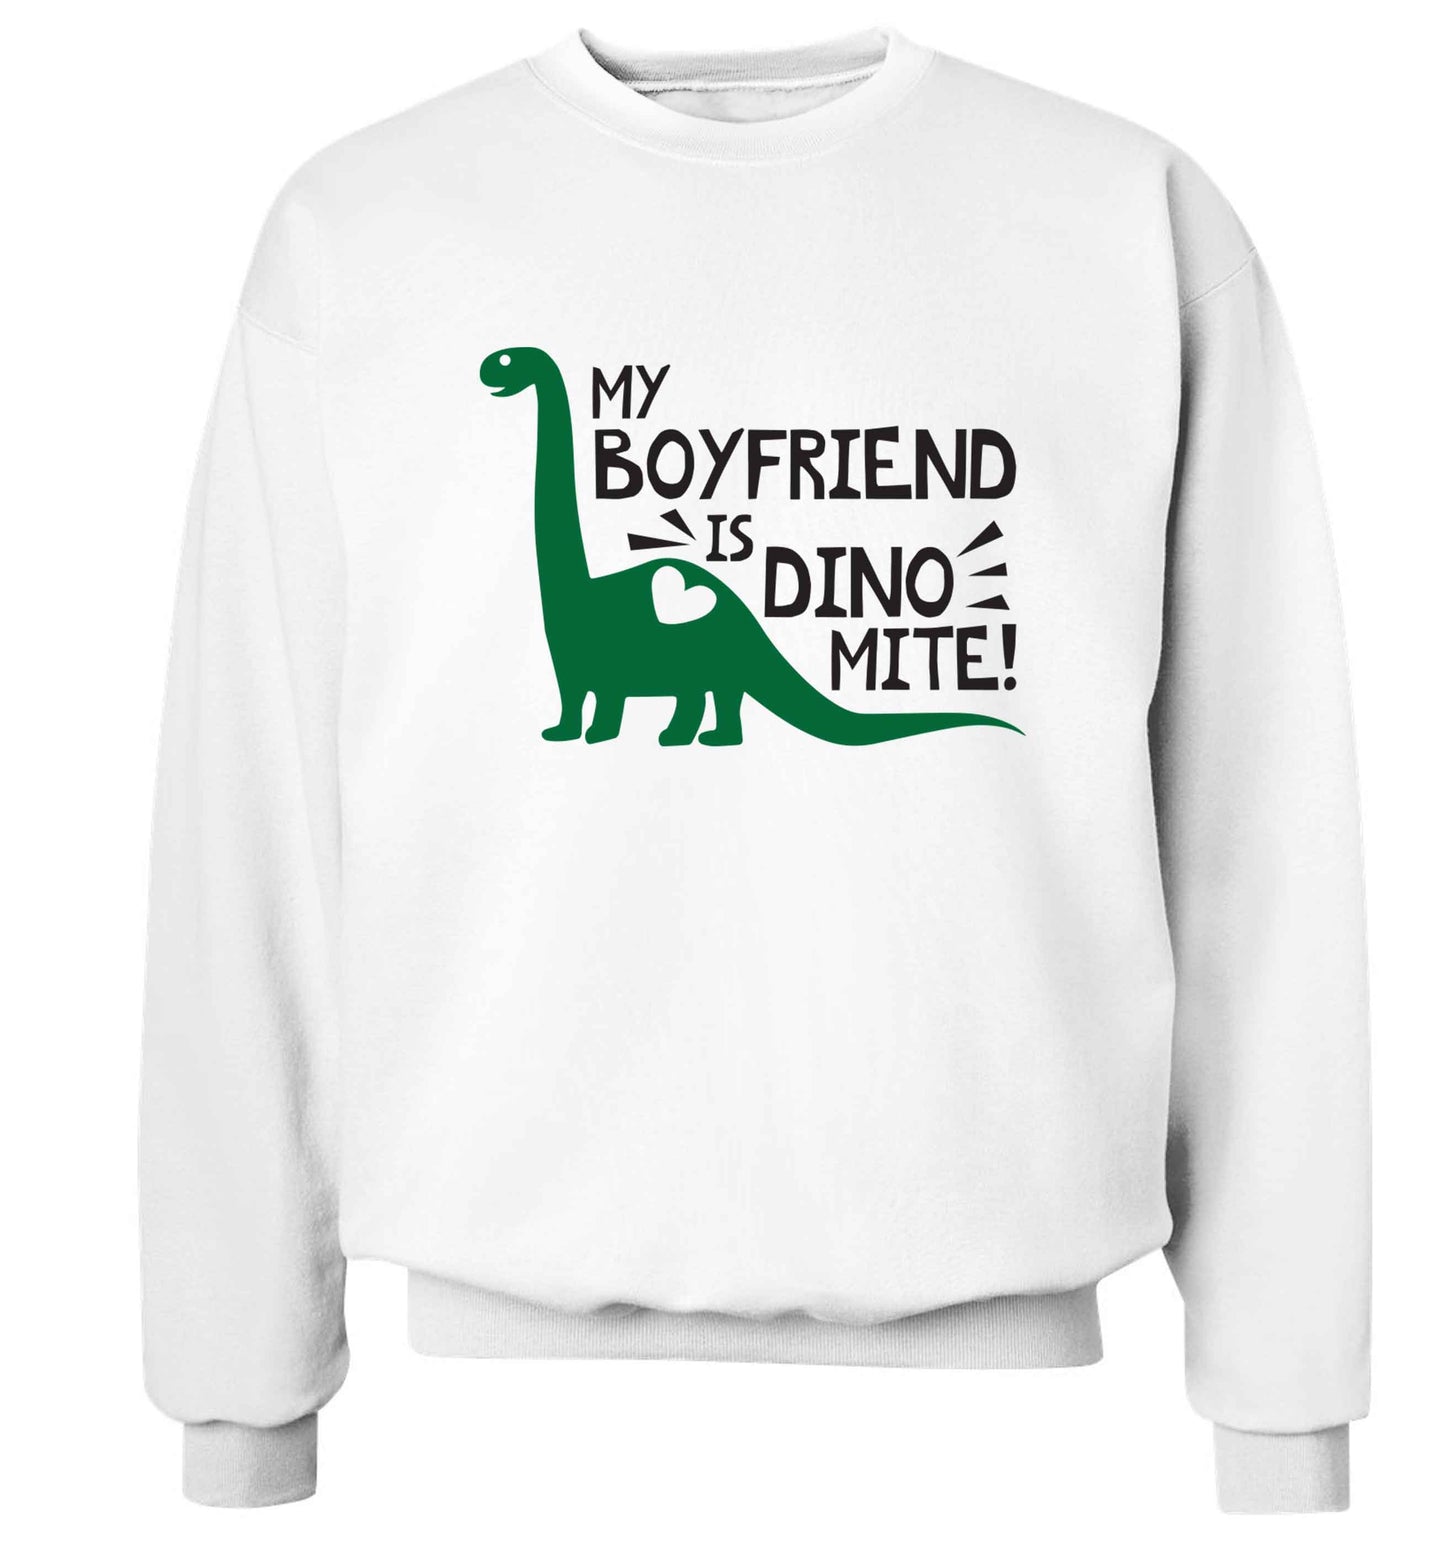 My boyfriend is dinomite! Adult's unisex white Sweater 2XL